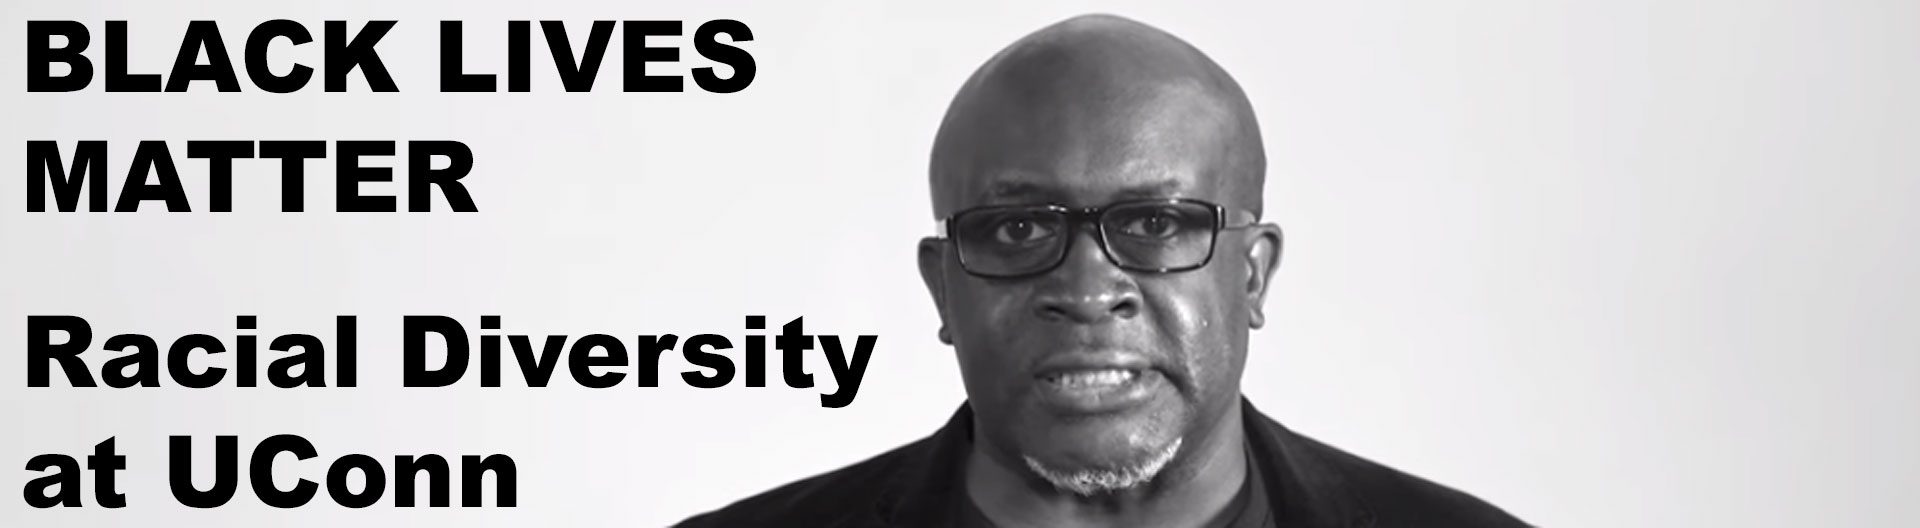 Frank Tuitt, text reads: BLACK LIVES MATTER Racial Diversity at UConn